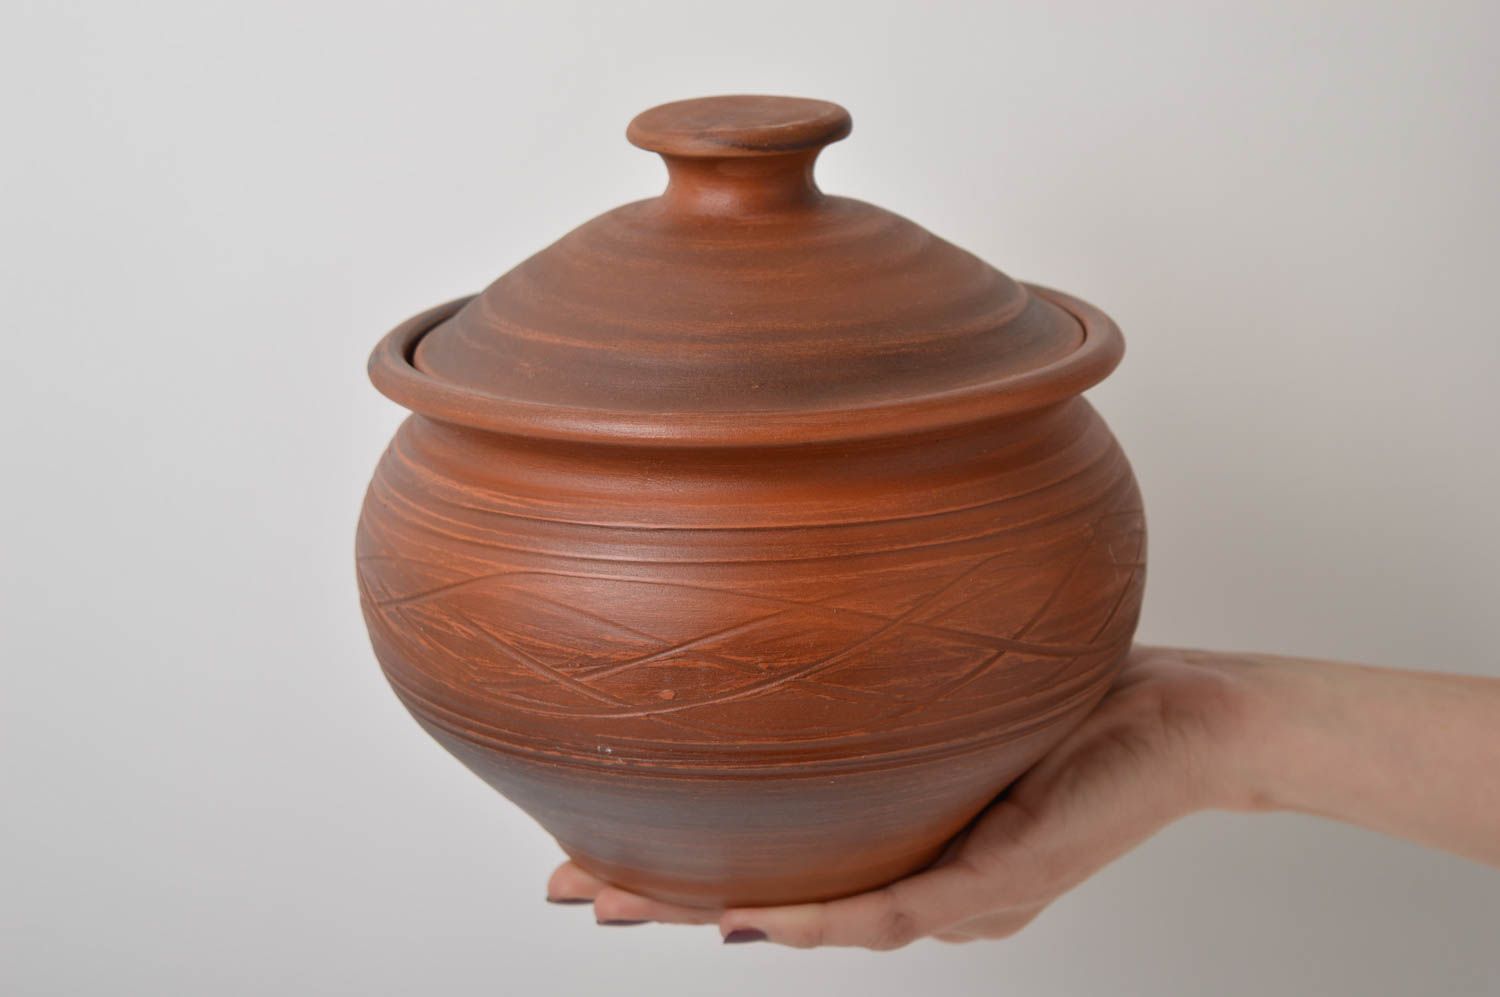 Topf aus Ton handmade Deko für Küche Keramik Geschirr im Öko Style schön foto 4